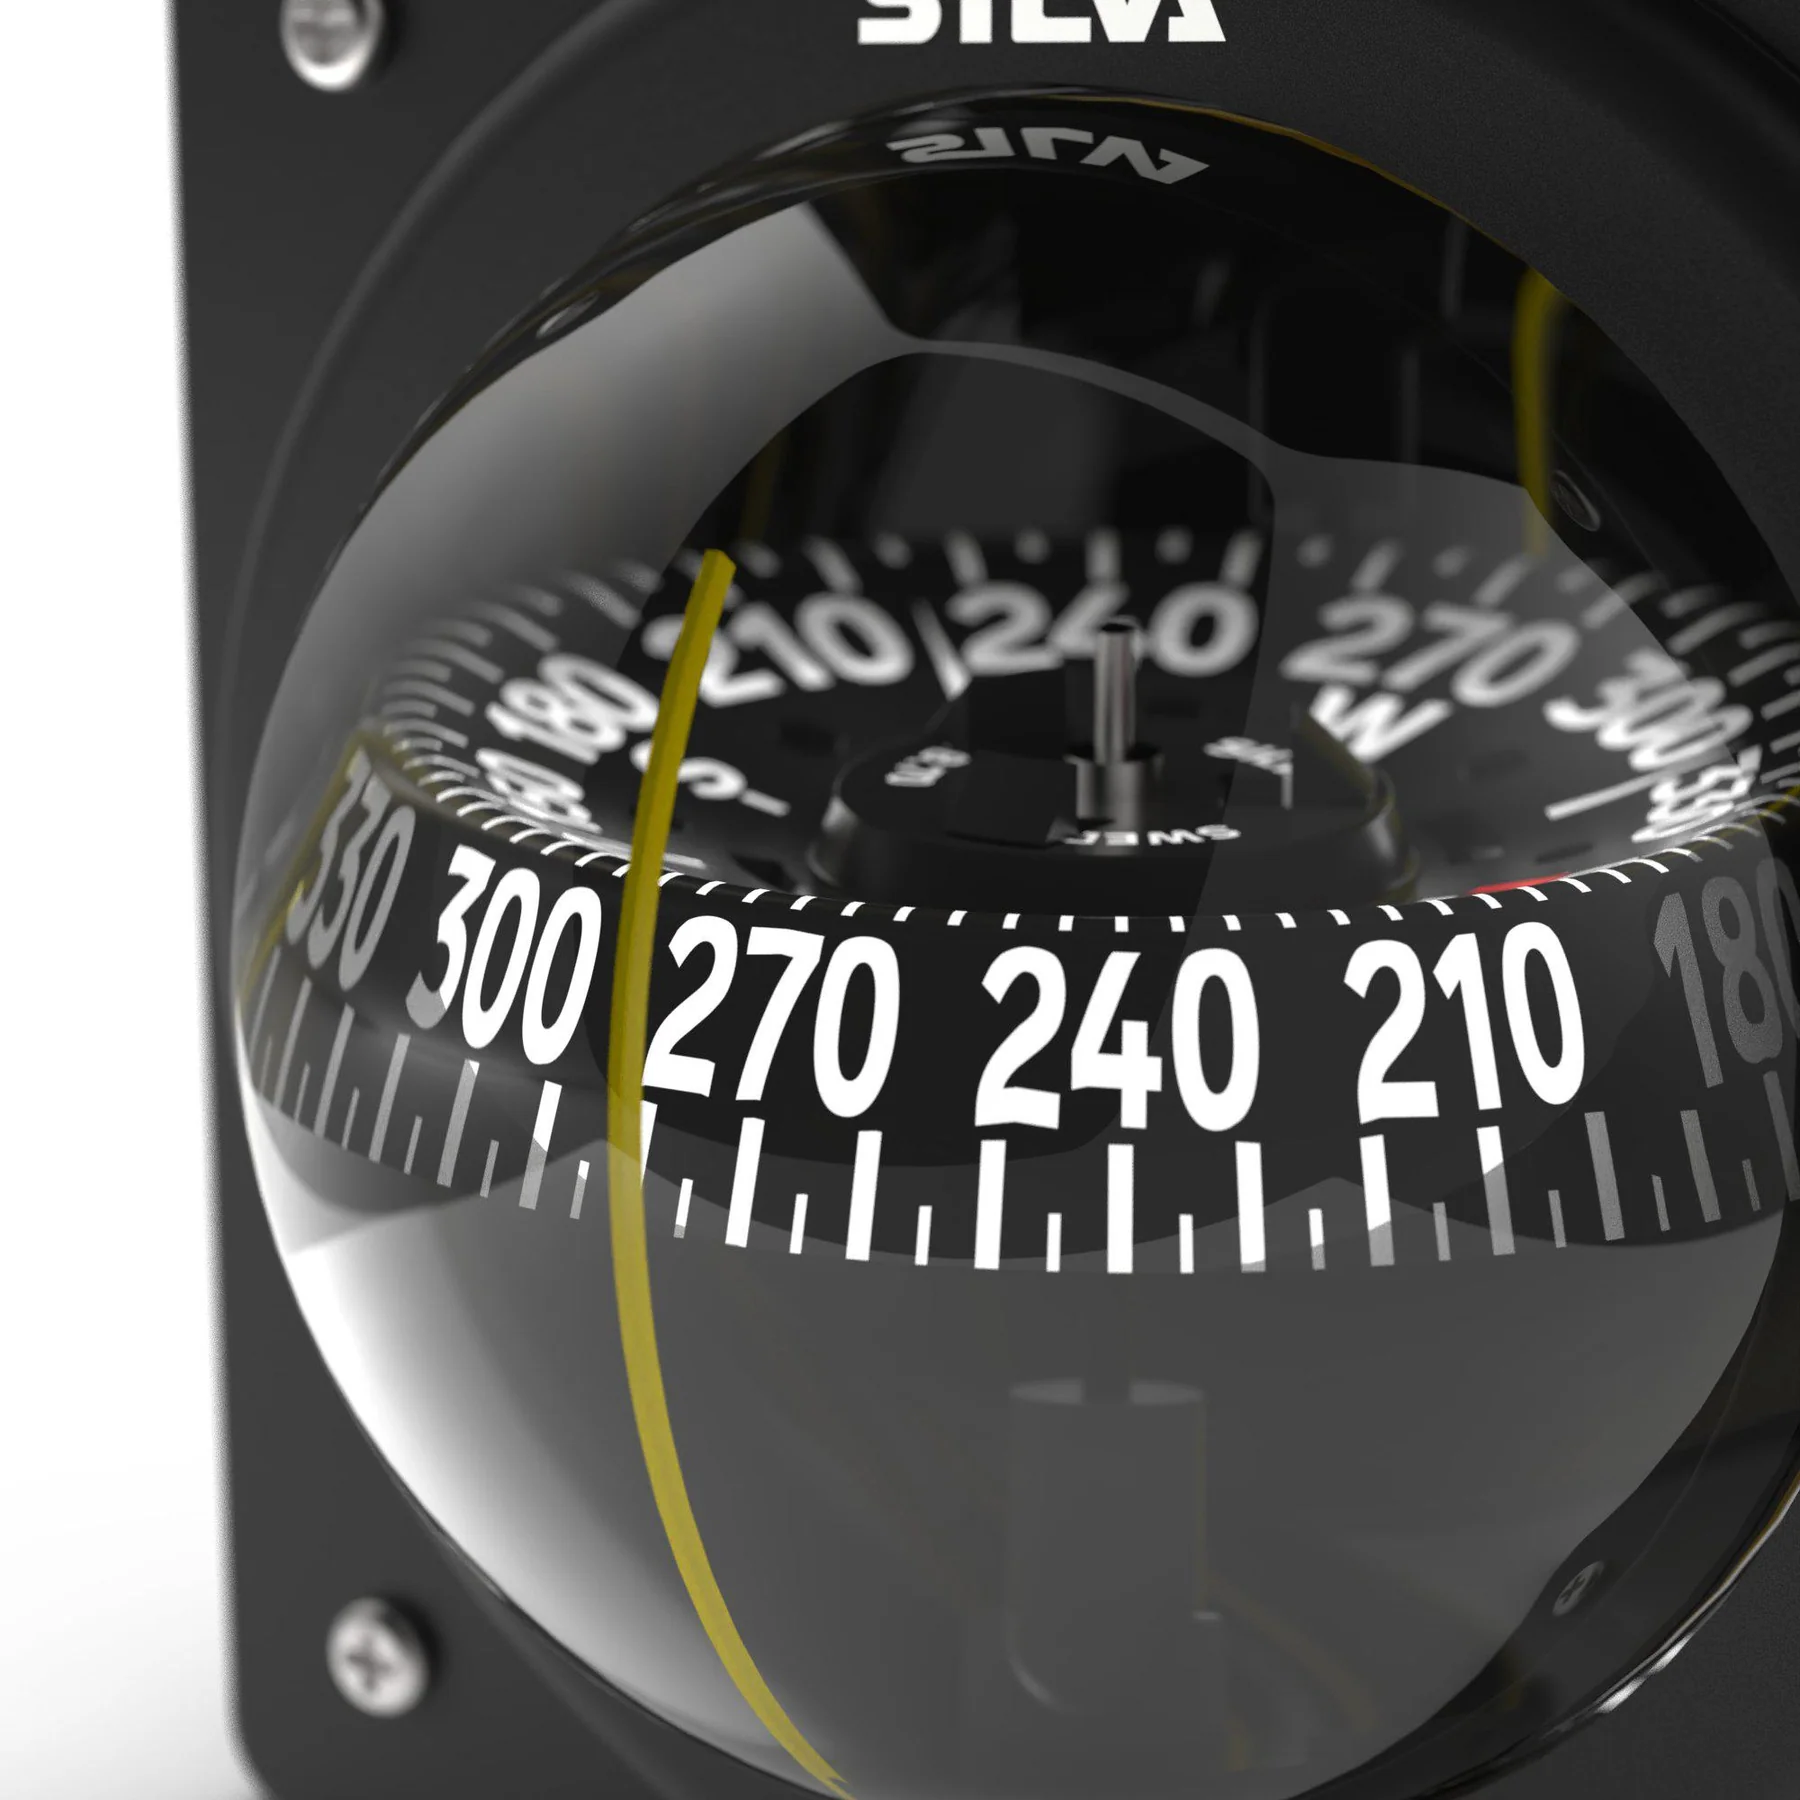 Bssola Silva Compass 70P